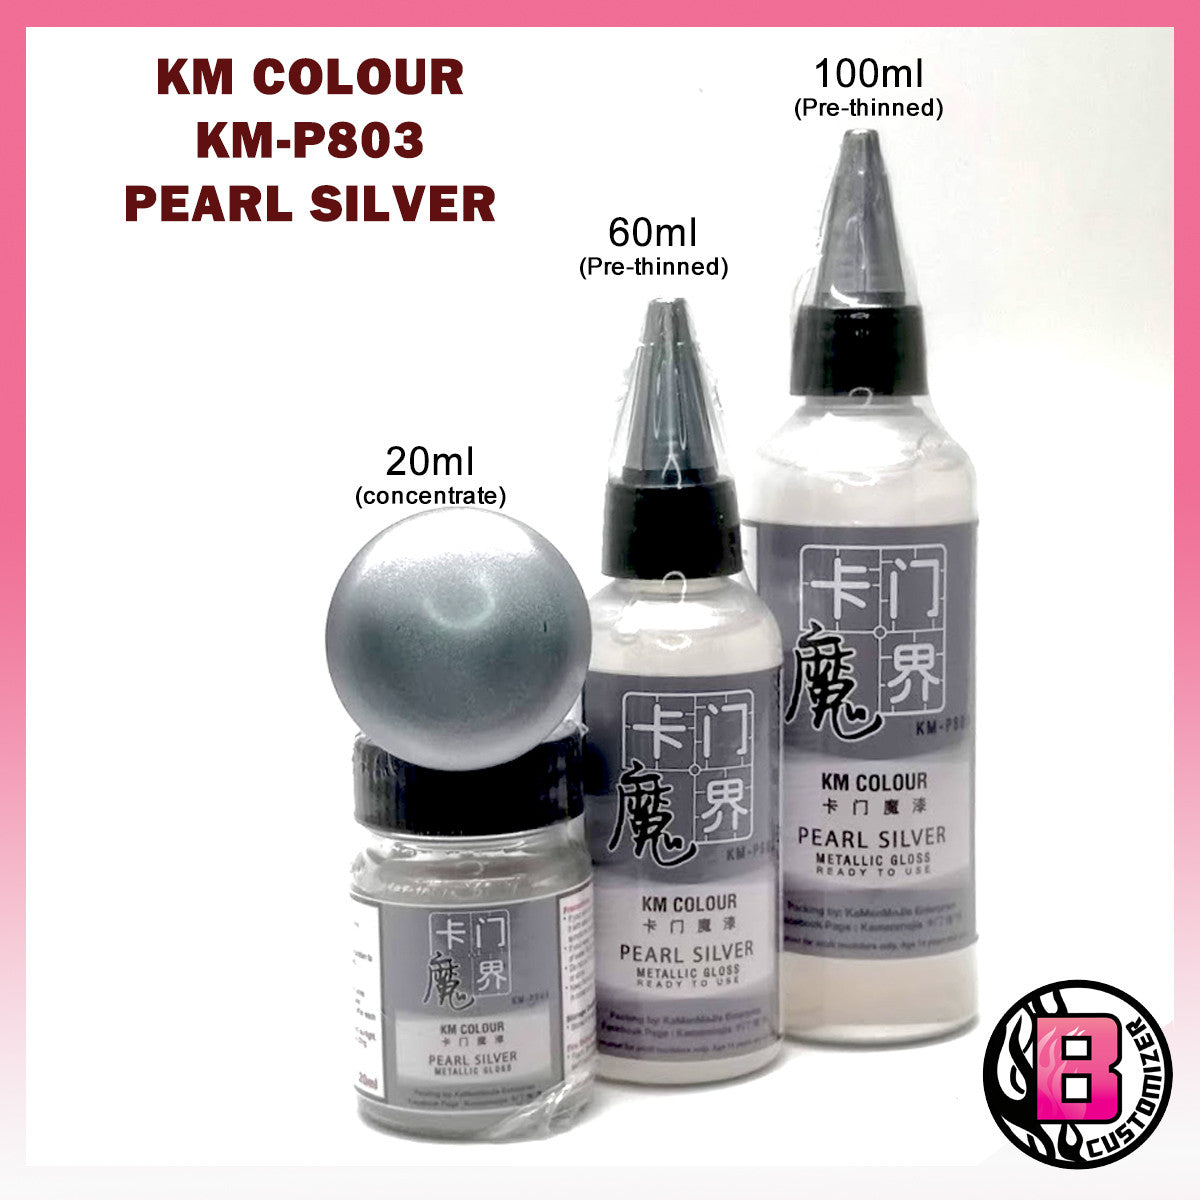 KM Colour Pearl Silver (KM-P803)